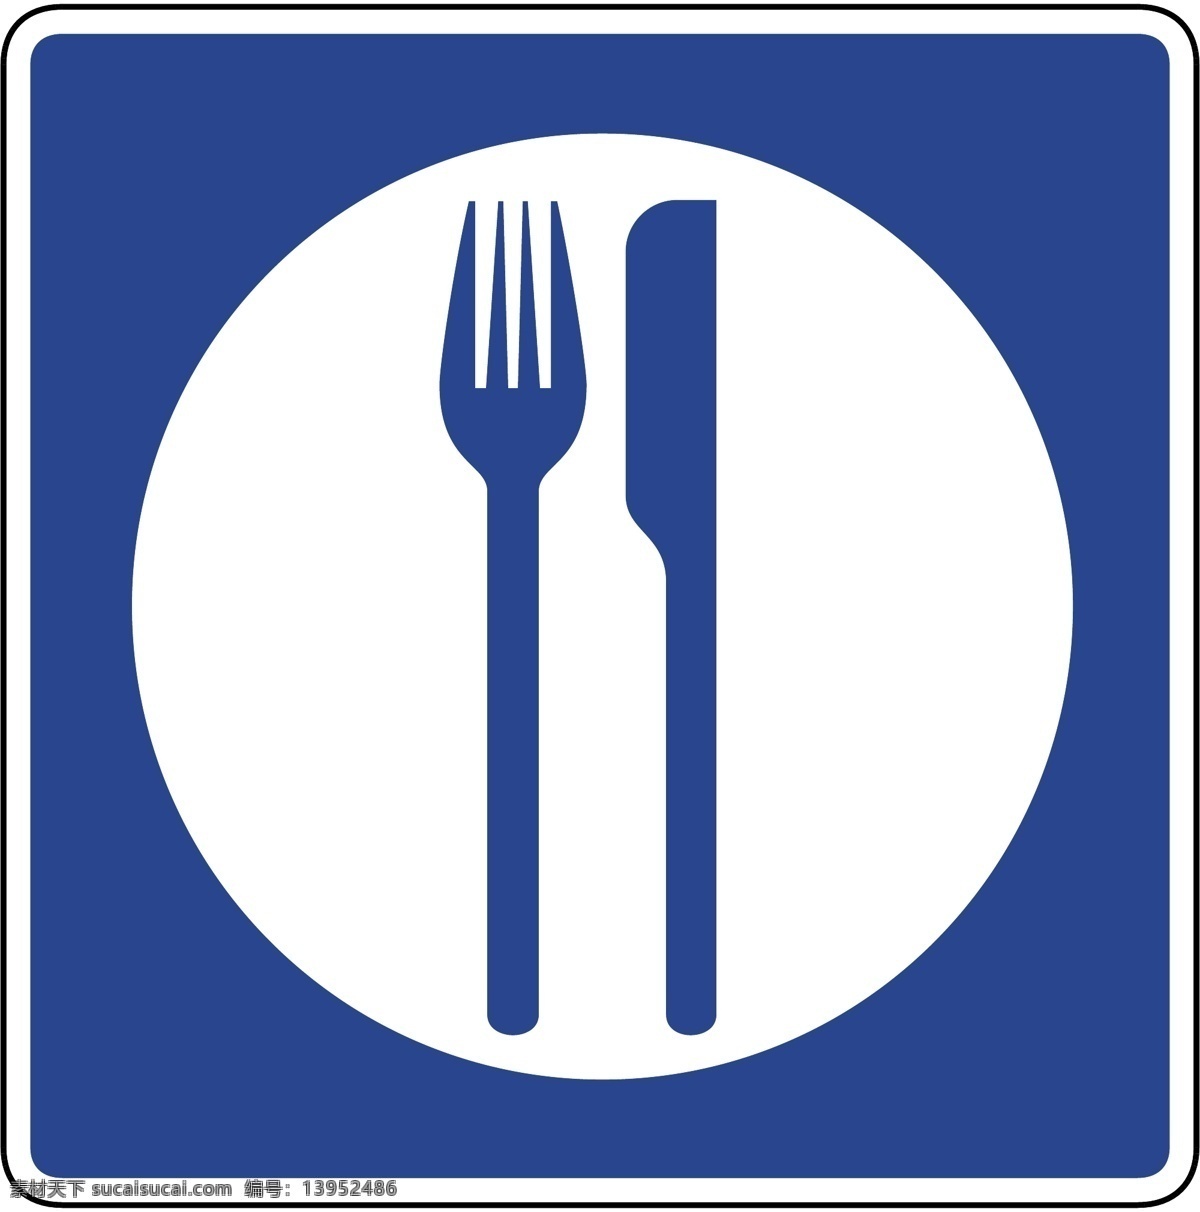 服务区 餐厅 餐厅标志 西餐厅 茶餐厅 标志 标志图标 公共标识标志